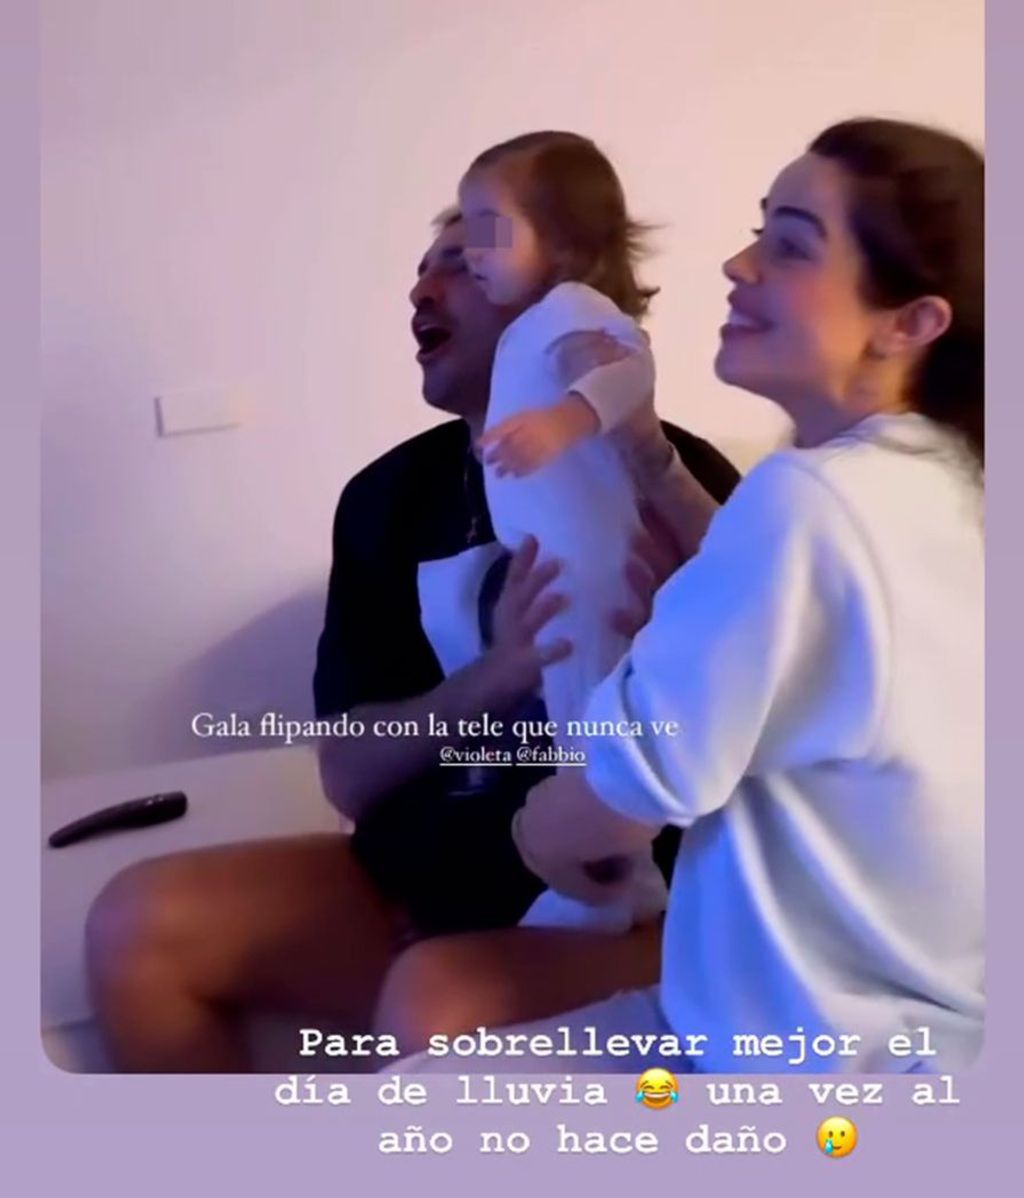 Gala, la hija de Violeta y Fabio, viendo la tele